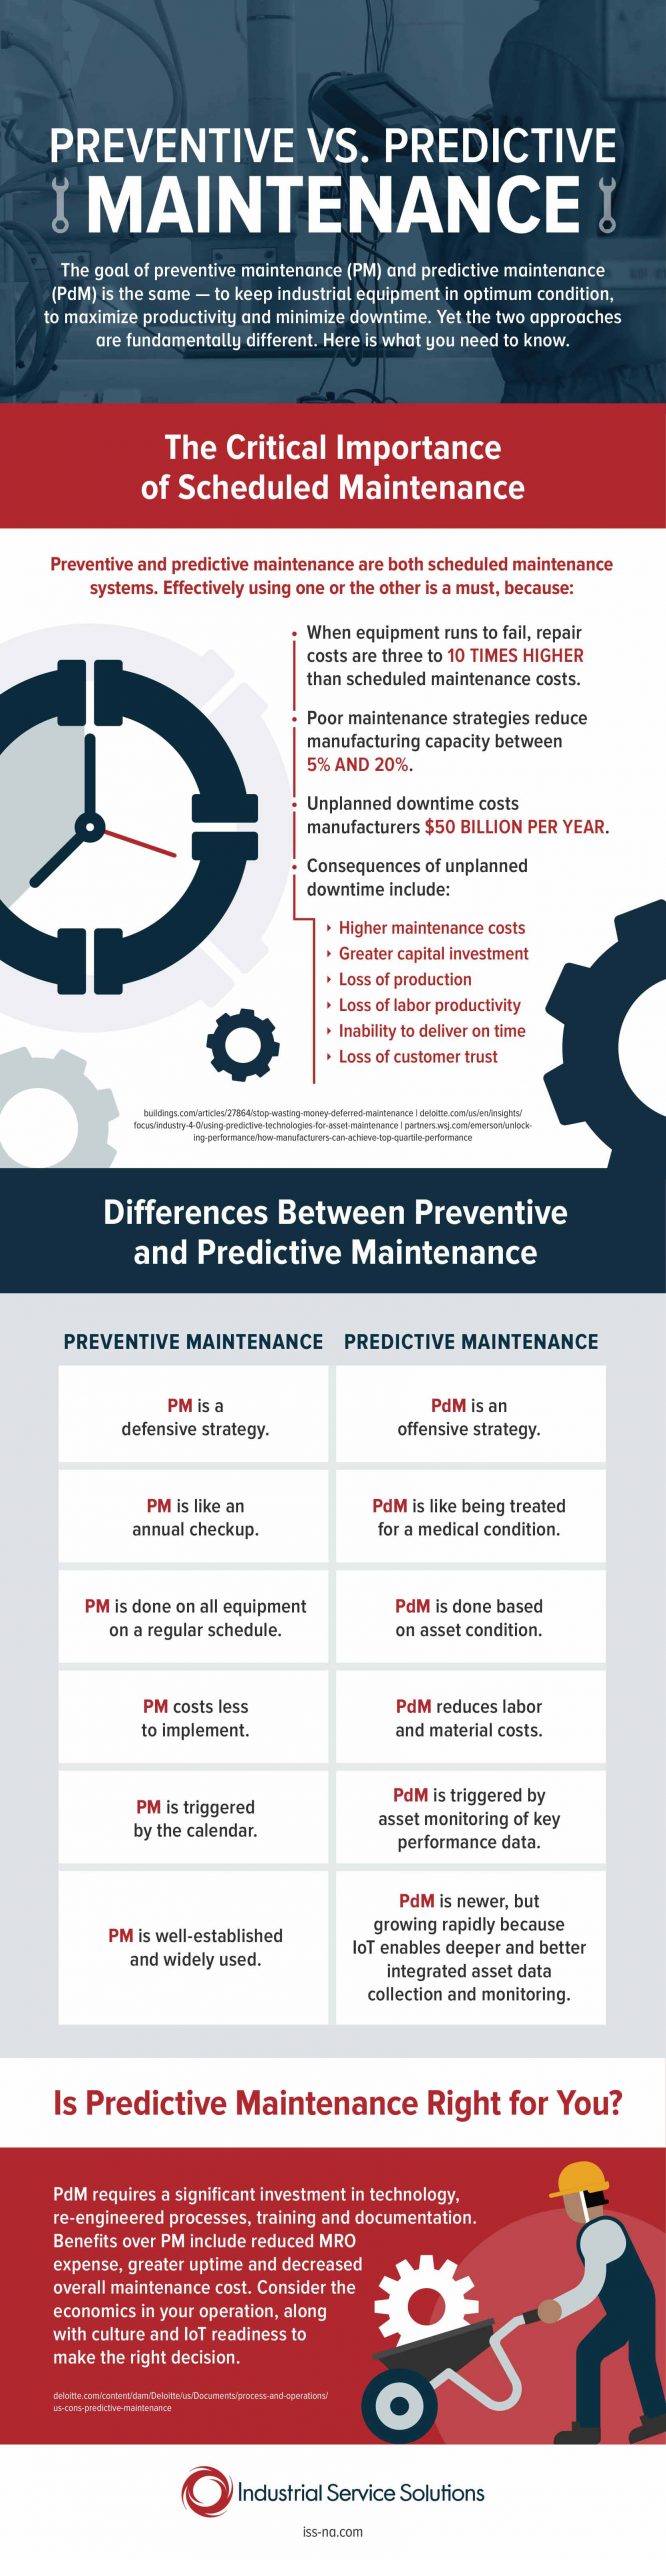 predictive vs preventive maintenance infographic